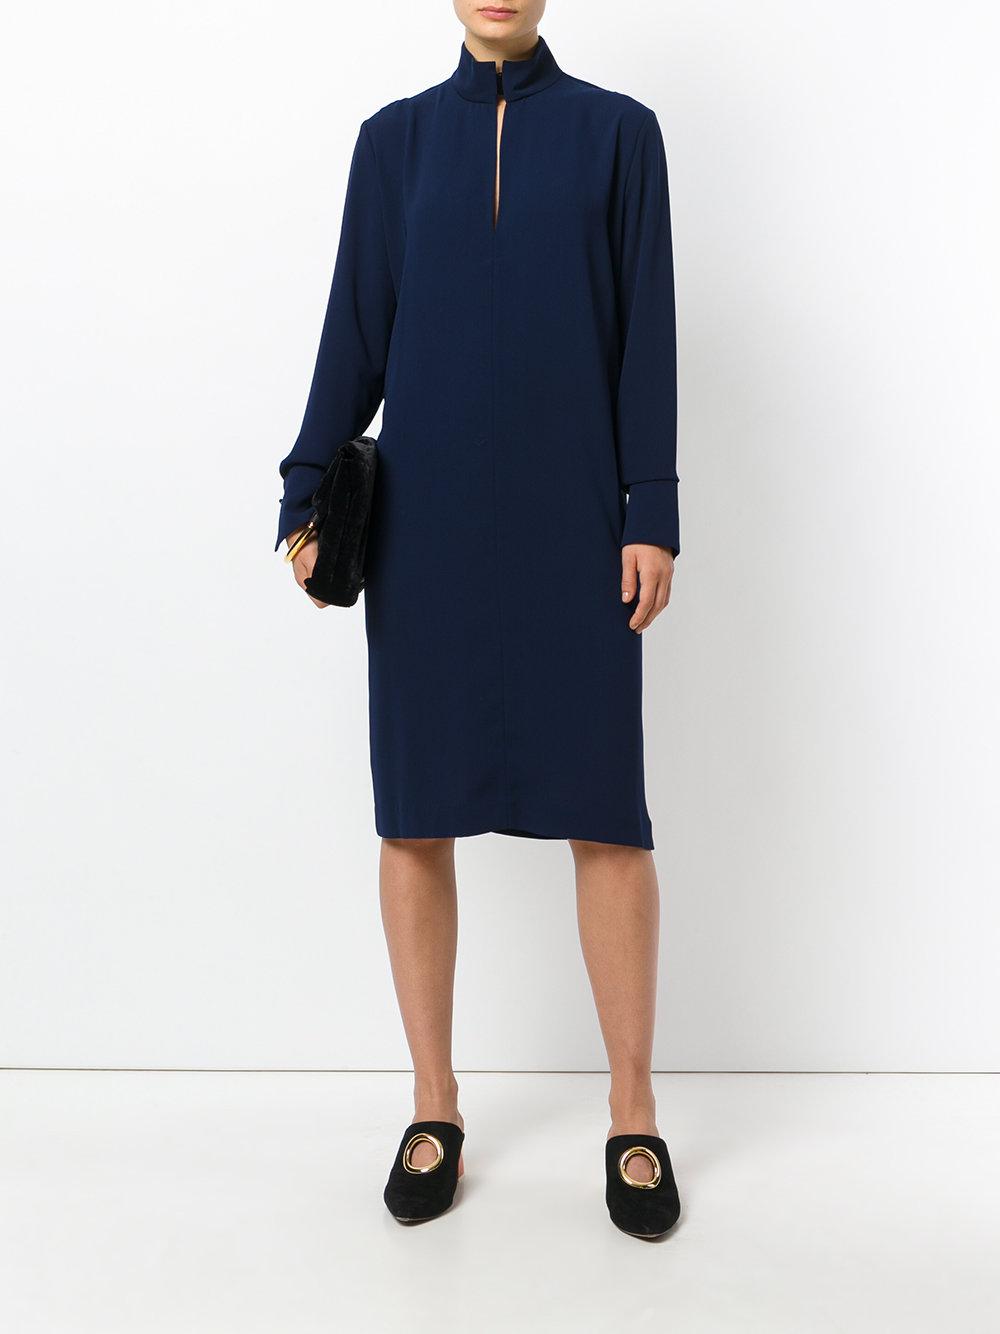 By Malene Birger Synthetic Ekual Dress in Blue - Lyst